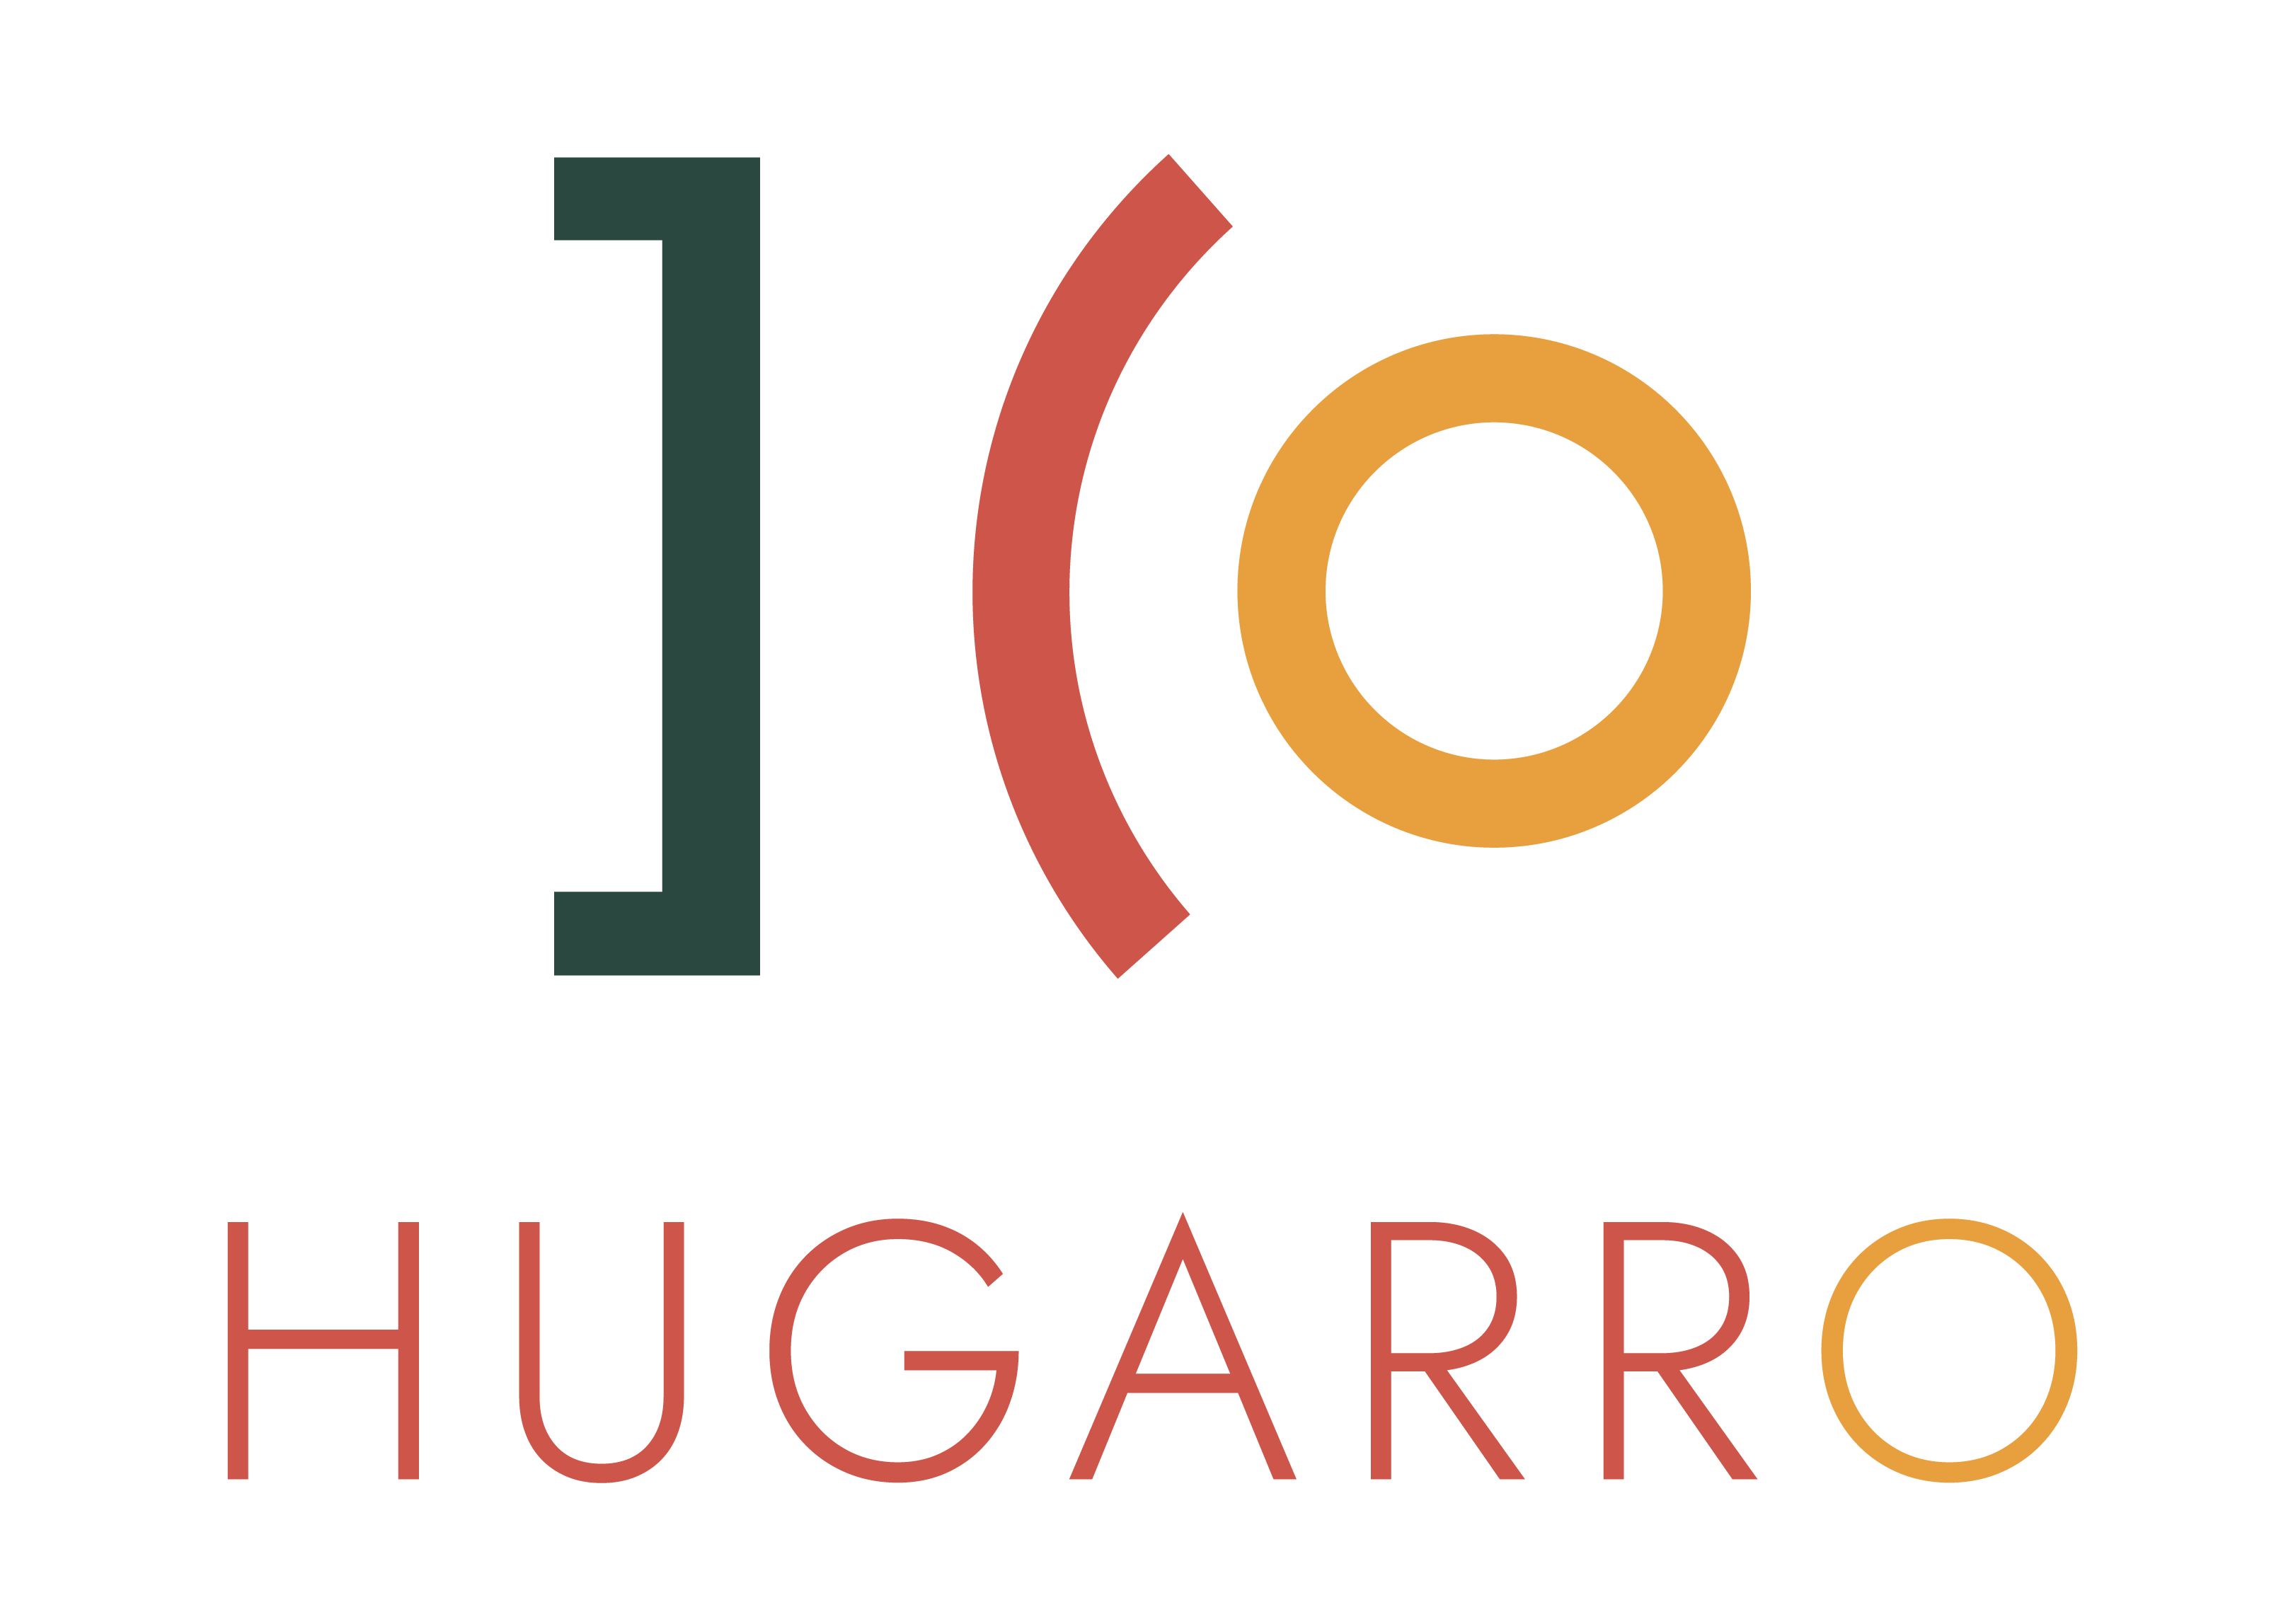 Hugarro